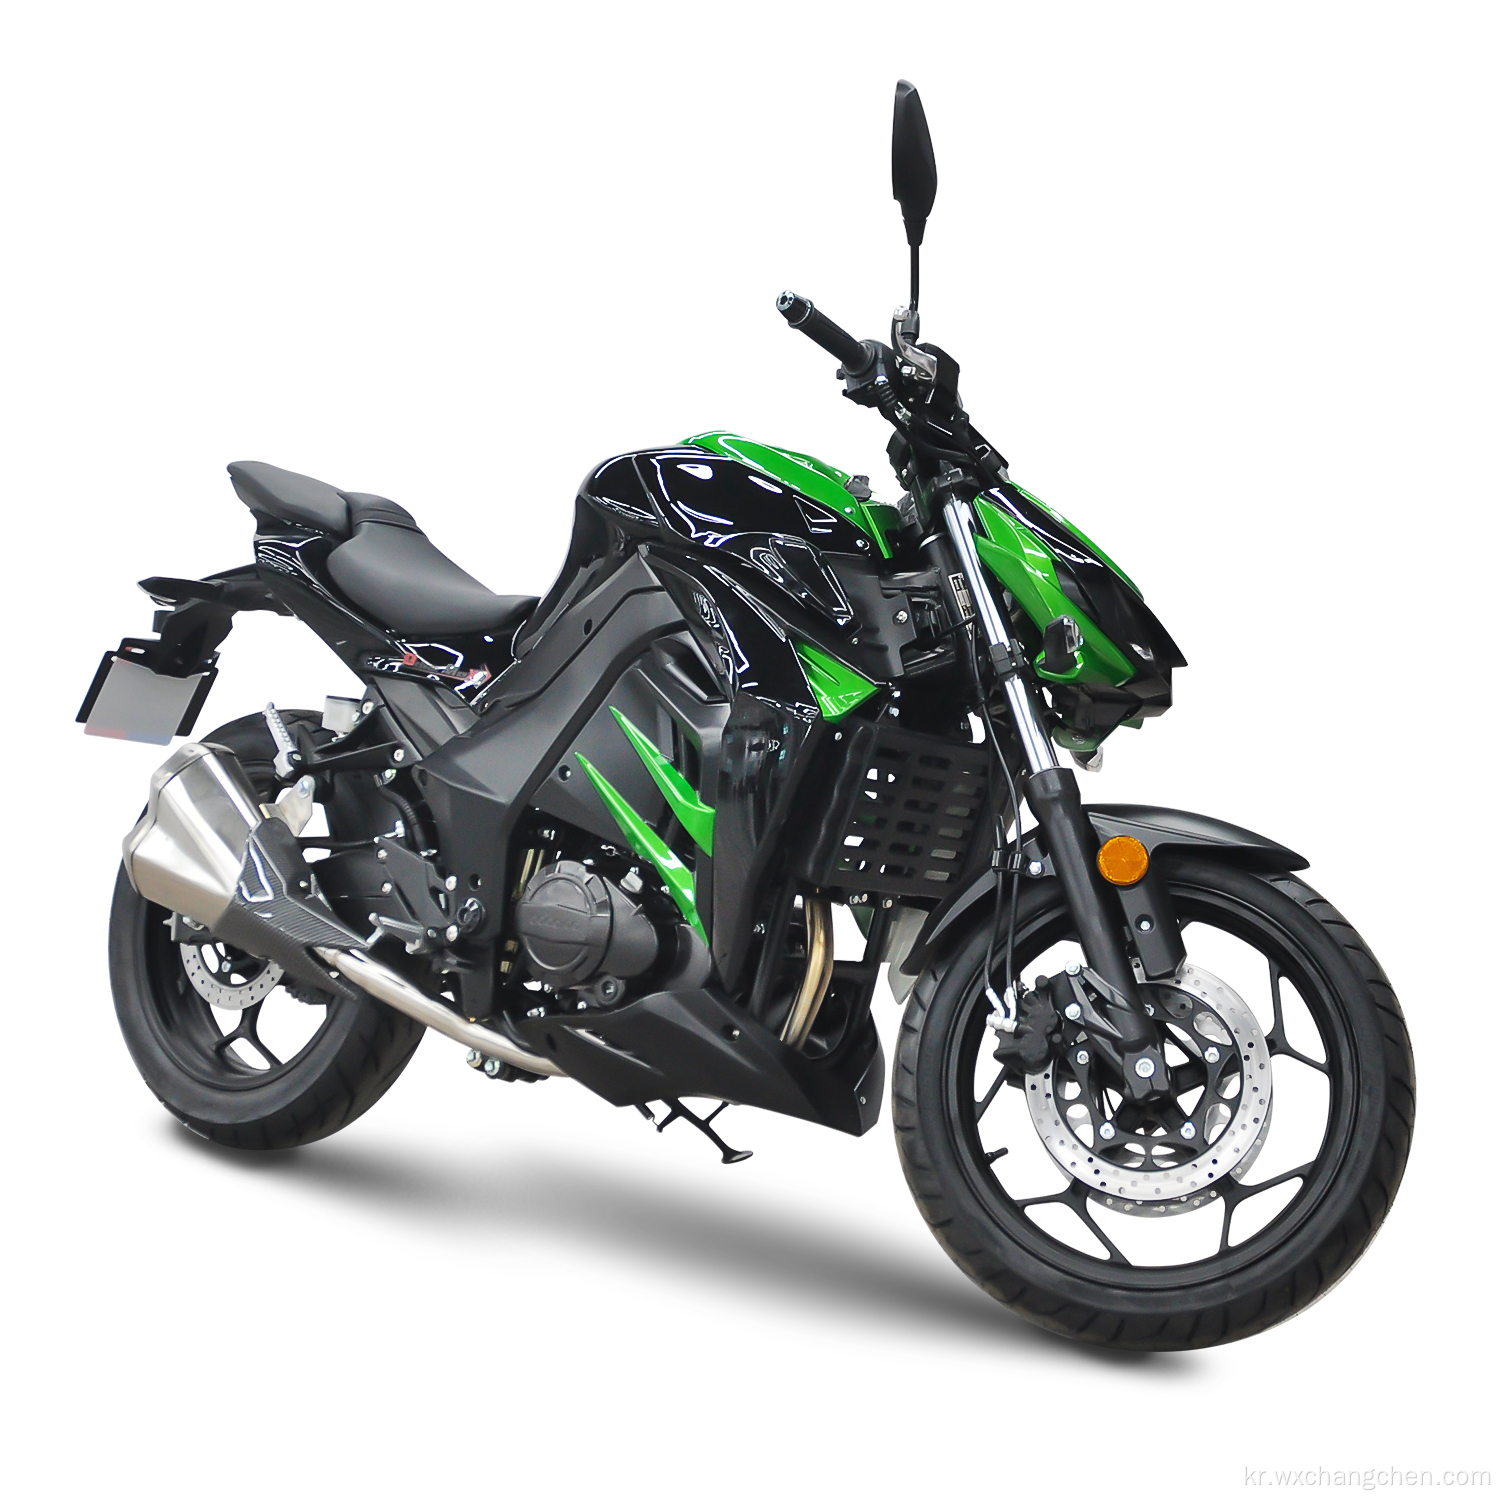 400cc 오토바이 2021 최신 도매 400cc 성인용 가솔린 오토바이